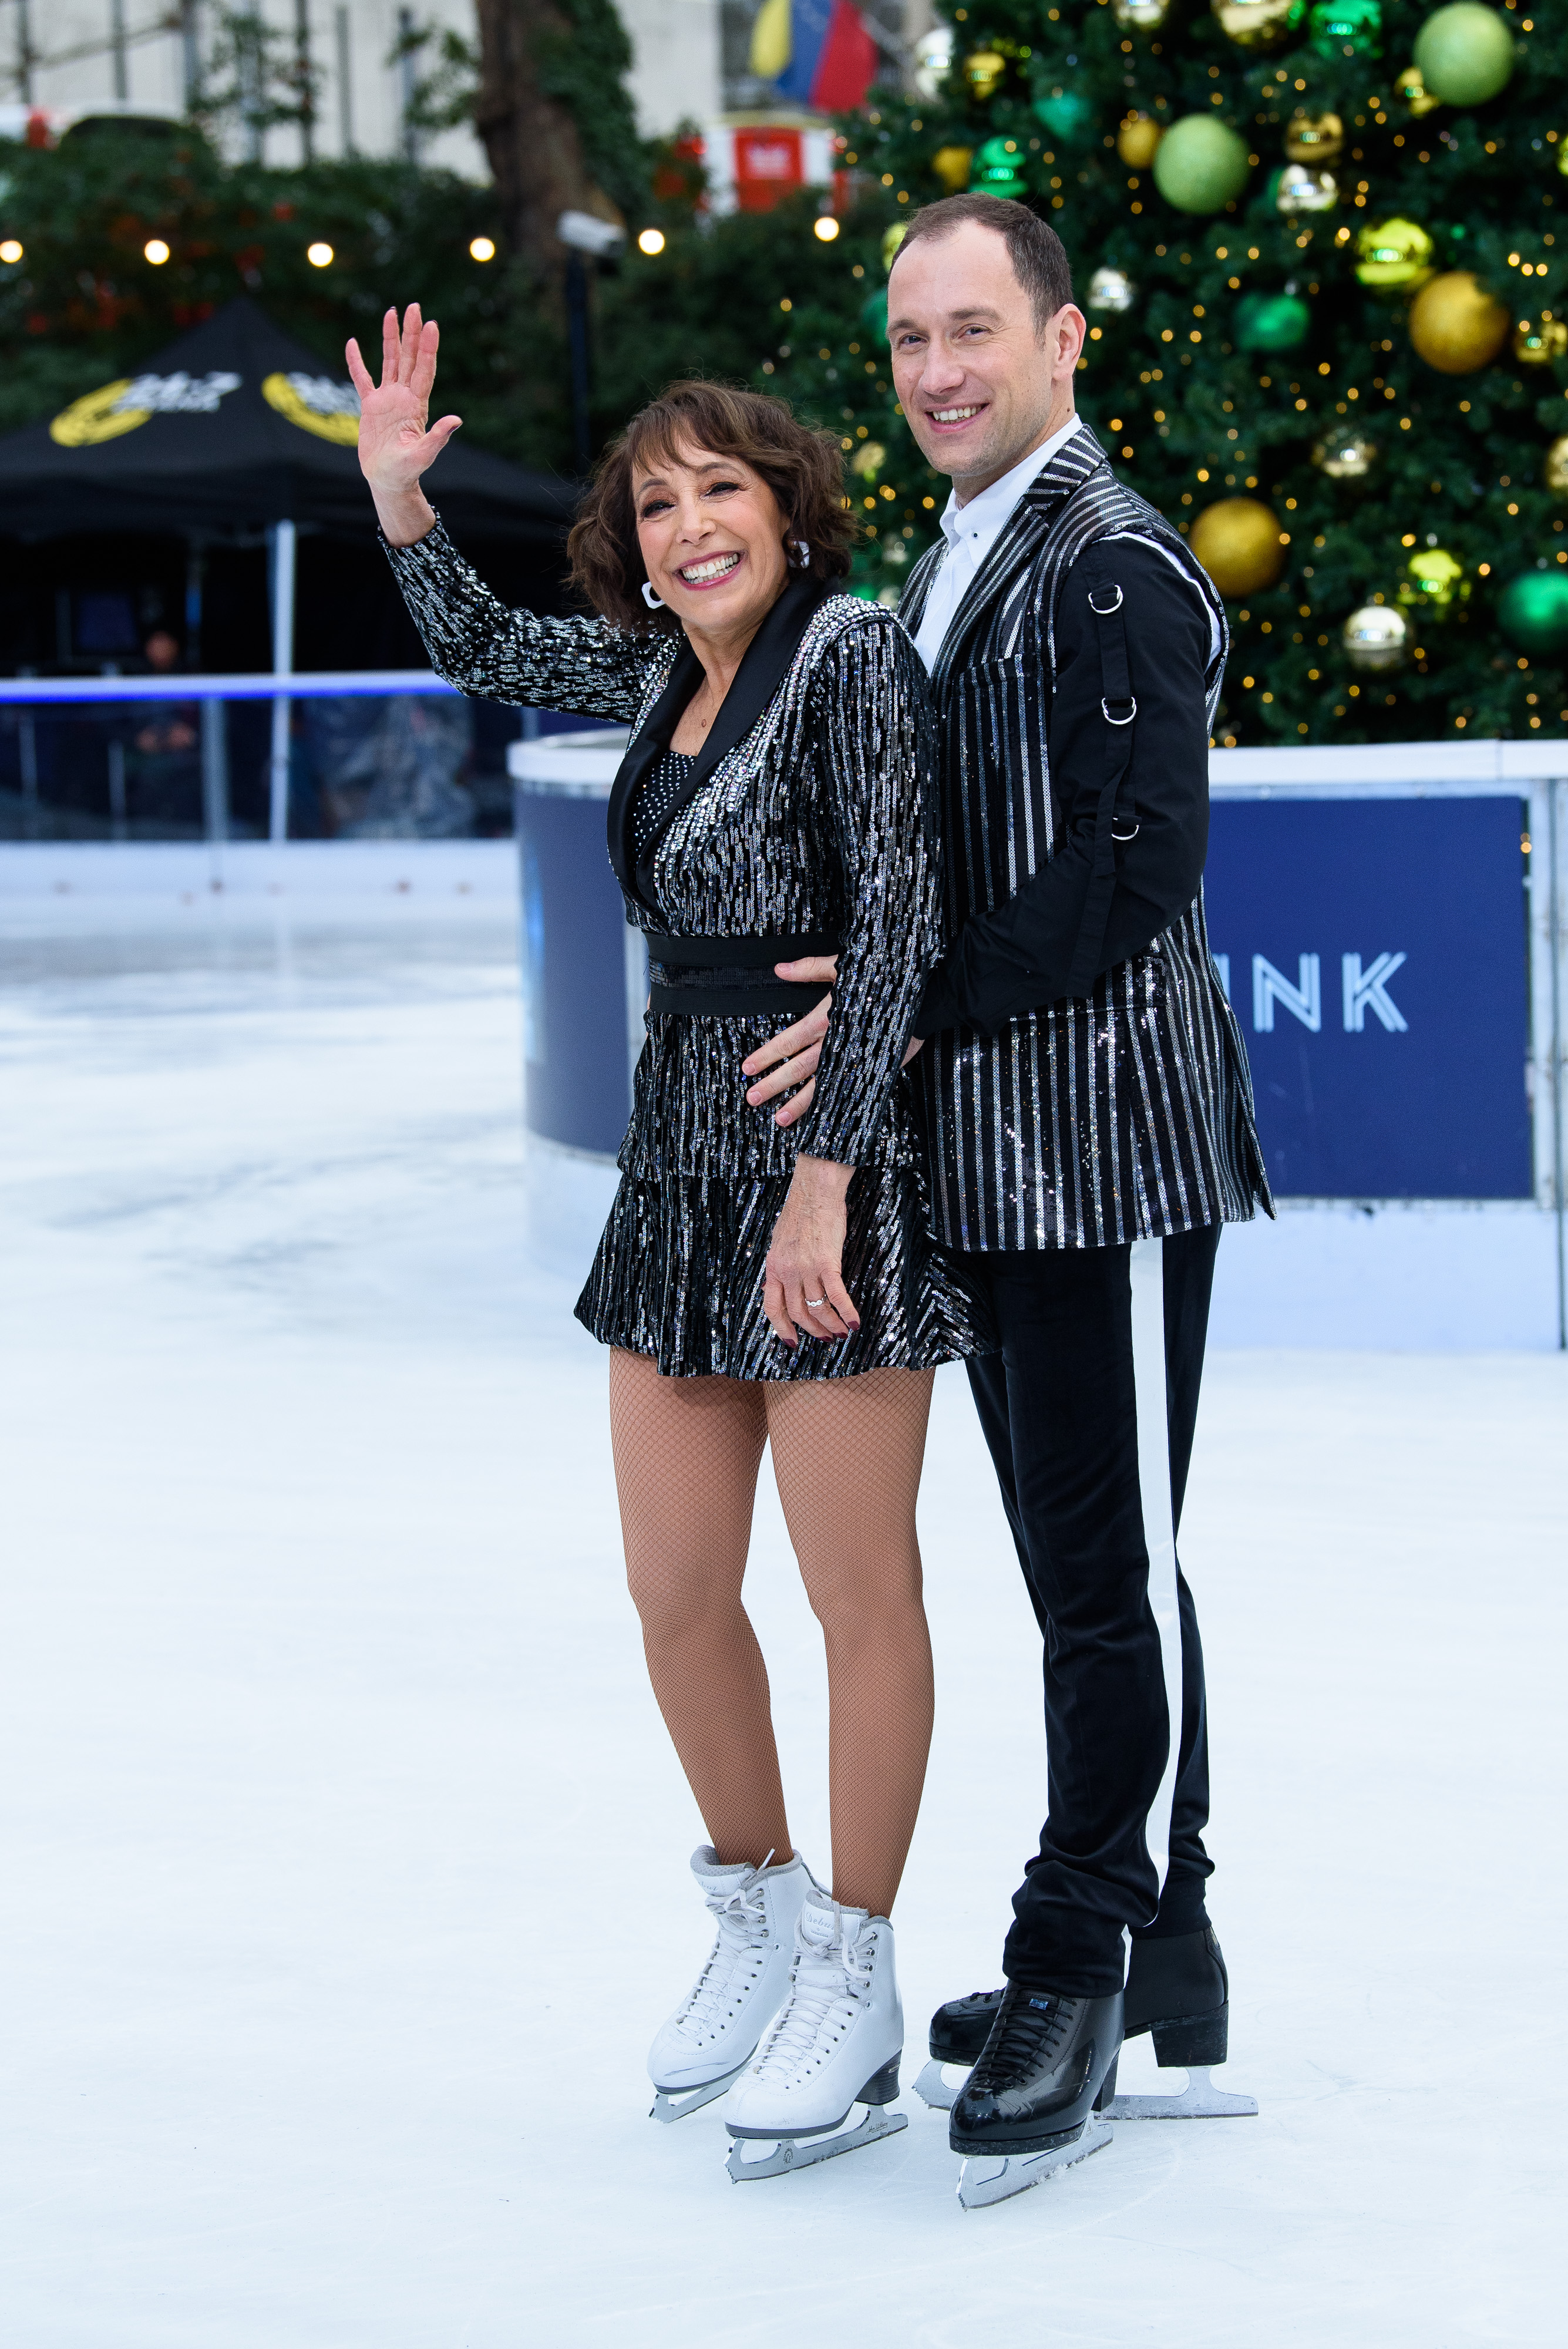 Didi Conn und Lukasz Rozycki während eines Fotocalls für "Dancing On Ice" in der Natural History Museum Ice Rink am 18. Dezember 2018 in London, England. | Quelle: Getty Images